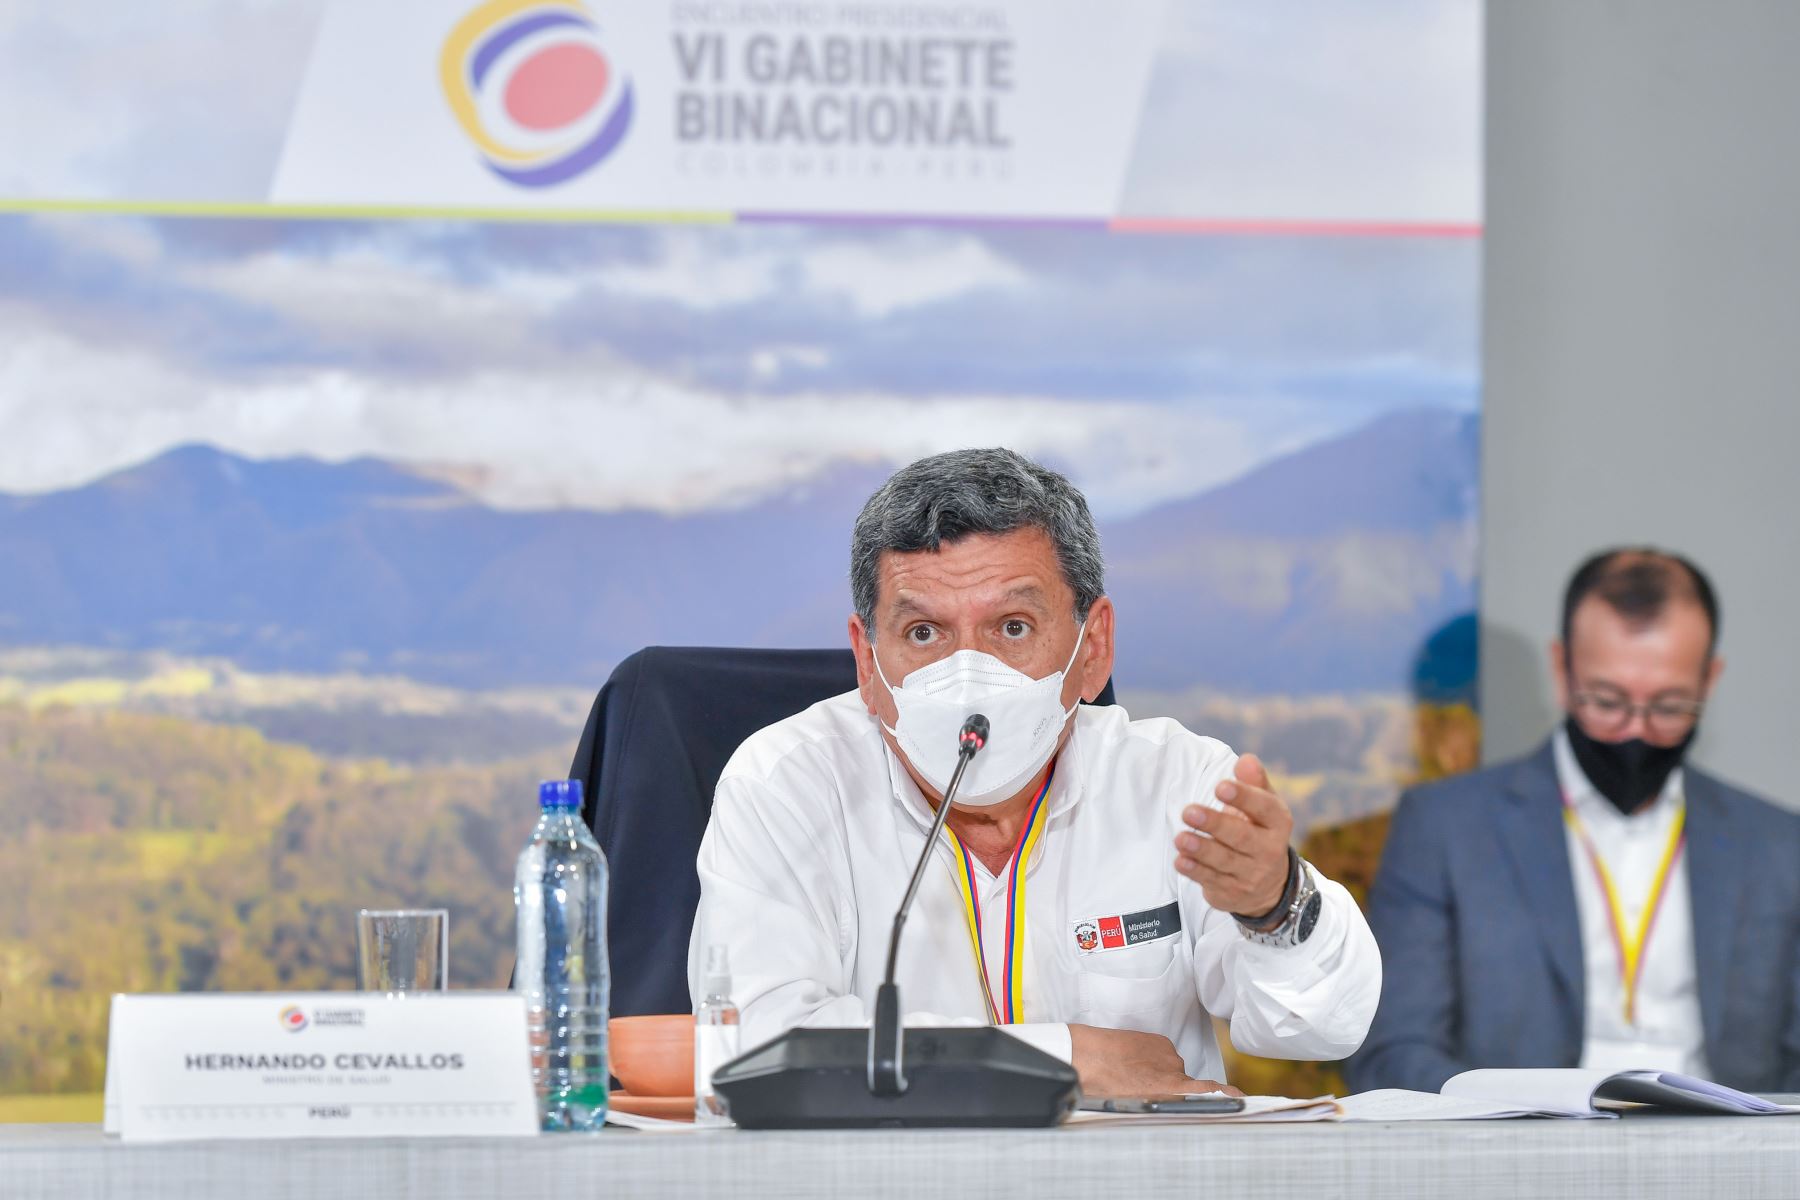 Ministro de Salud Hernando Cevallos, participó en el Encuentro Presidencial y VI Gabinete Binacional Perú-Colombia.
Foto: ANDINA/Presidencia Perú